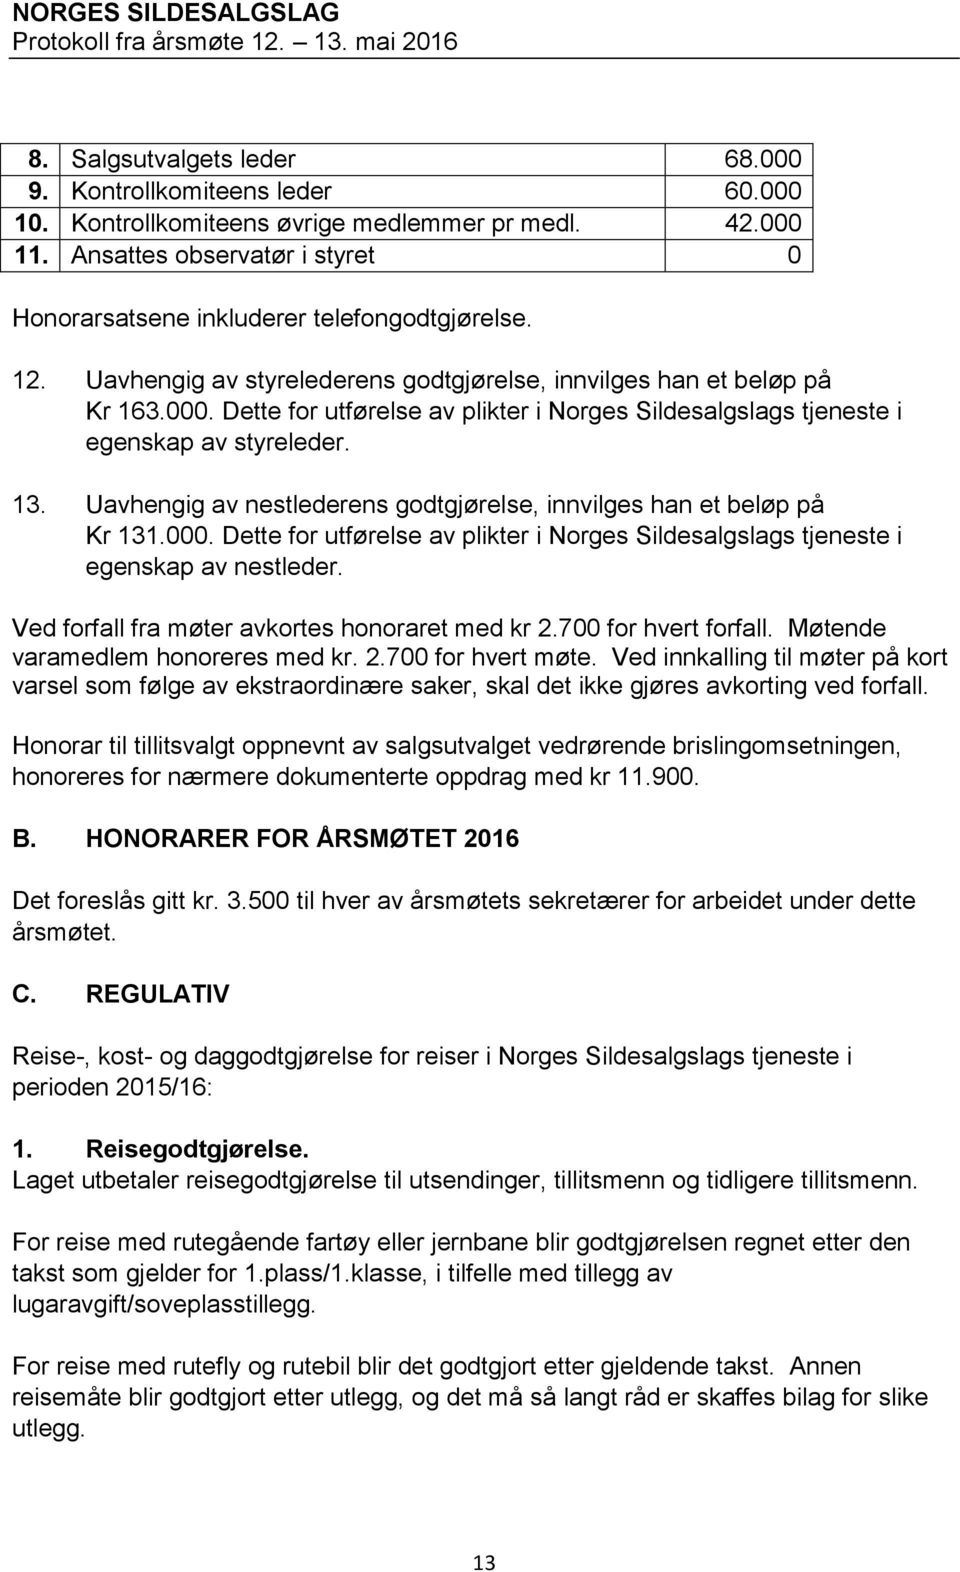 Dette for utførelse av plikter i Norges Sildesalgslags tjeneste i egenskap av styreleder. 13. Uavhengig av nestlederens godtgjørelse, innvilges han et beløp på Kr 131.000.